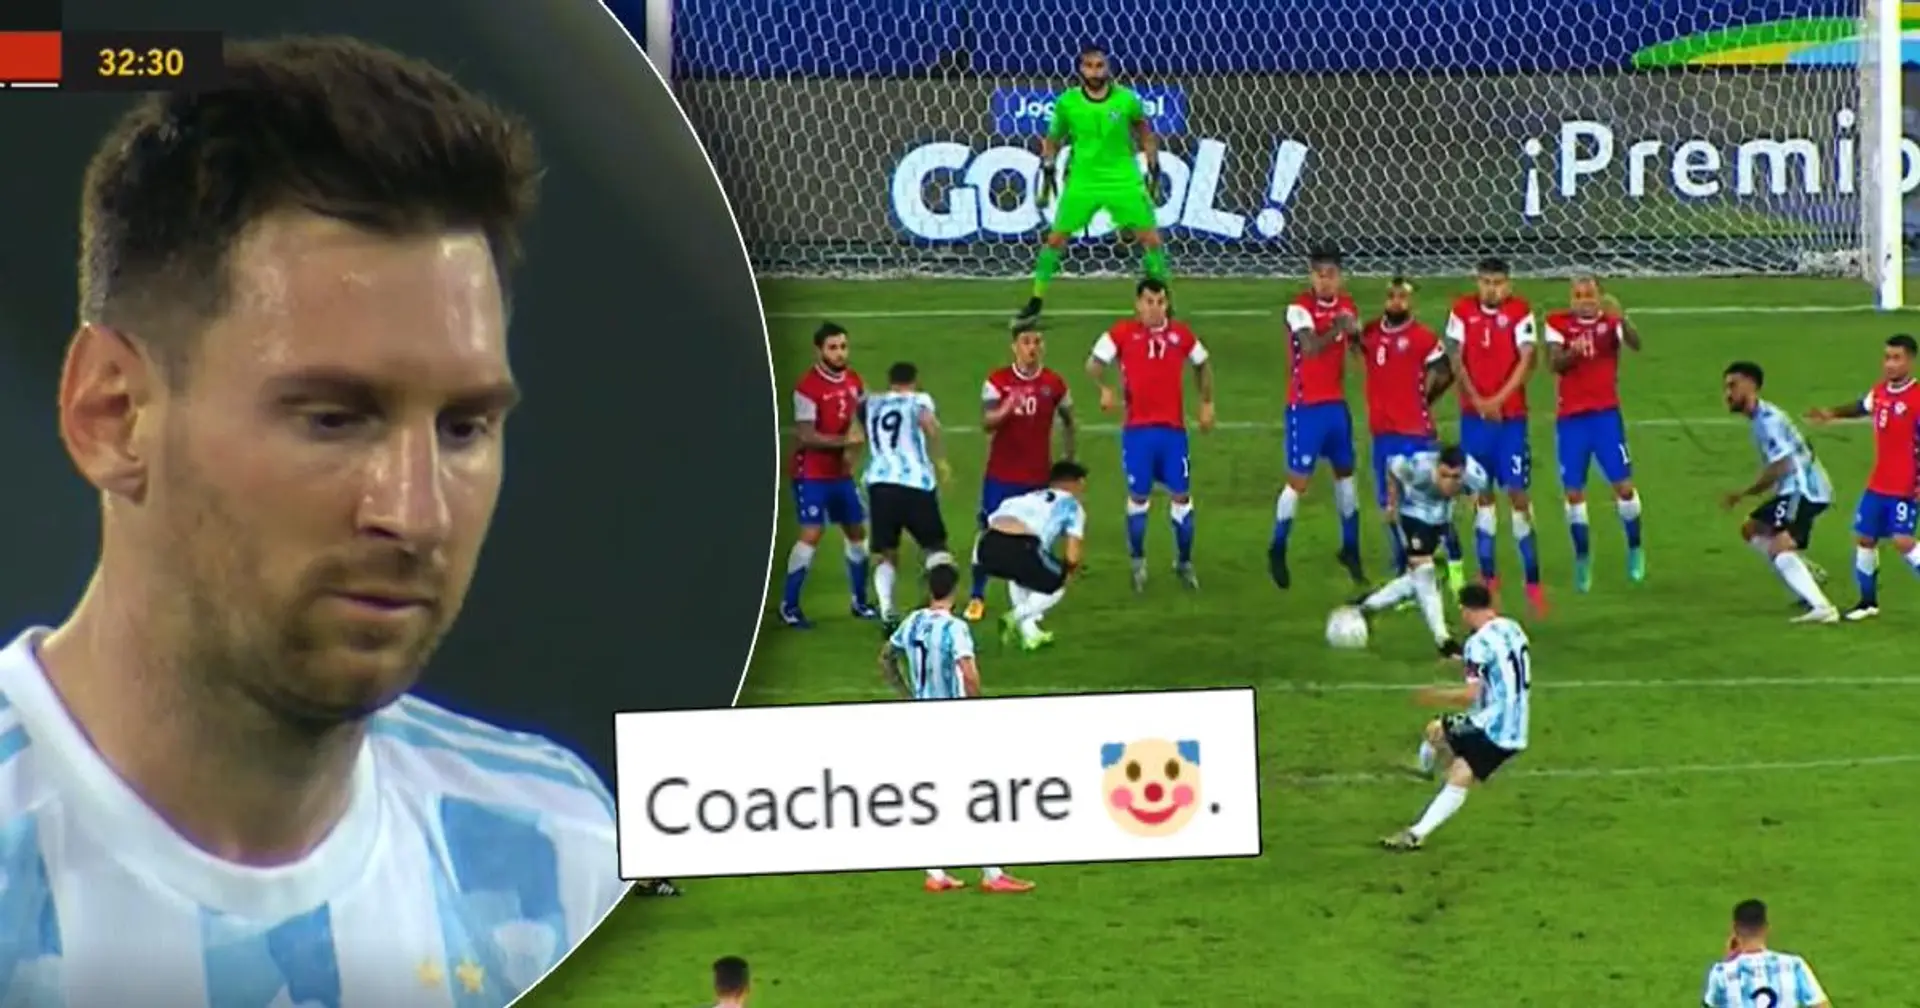 Le Chili érige un mur massif pour se défendre du coup franc de Messi – un fan y voit un grand trou comme Leo l'a fait